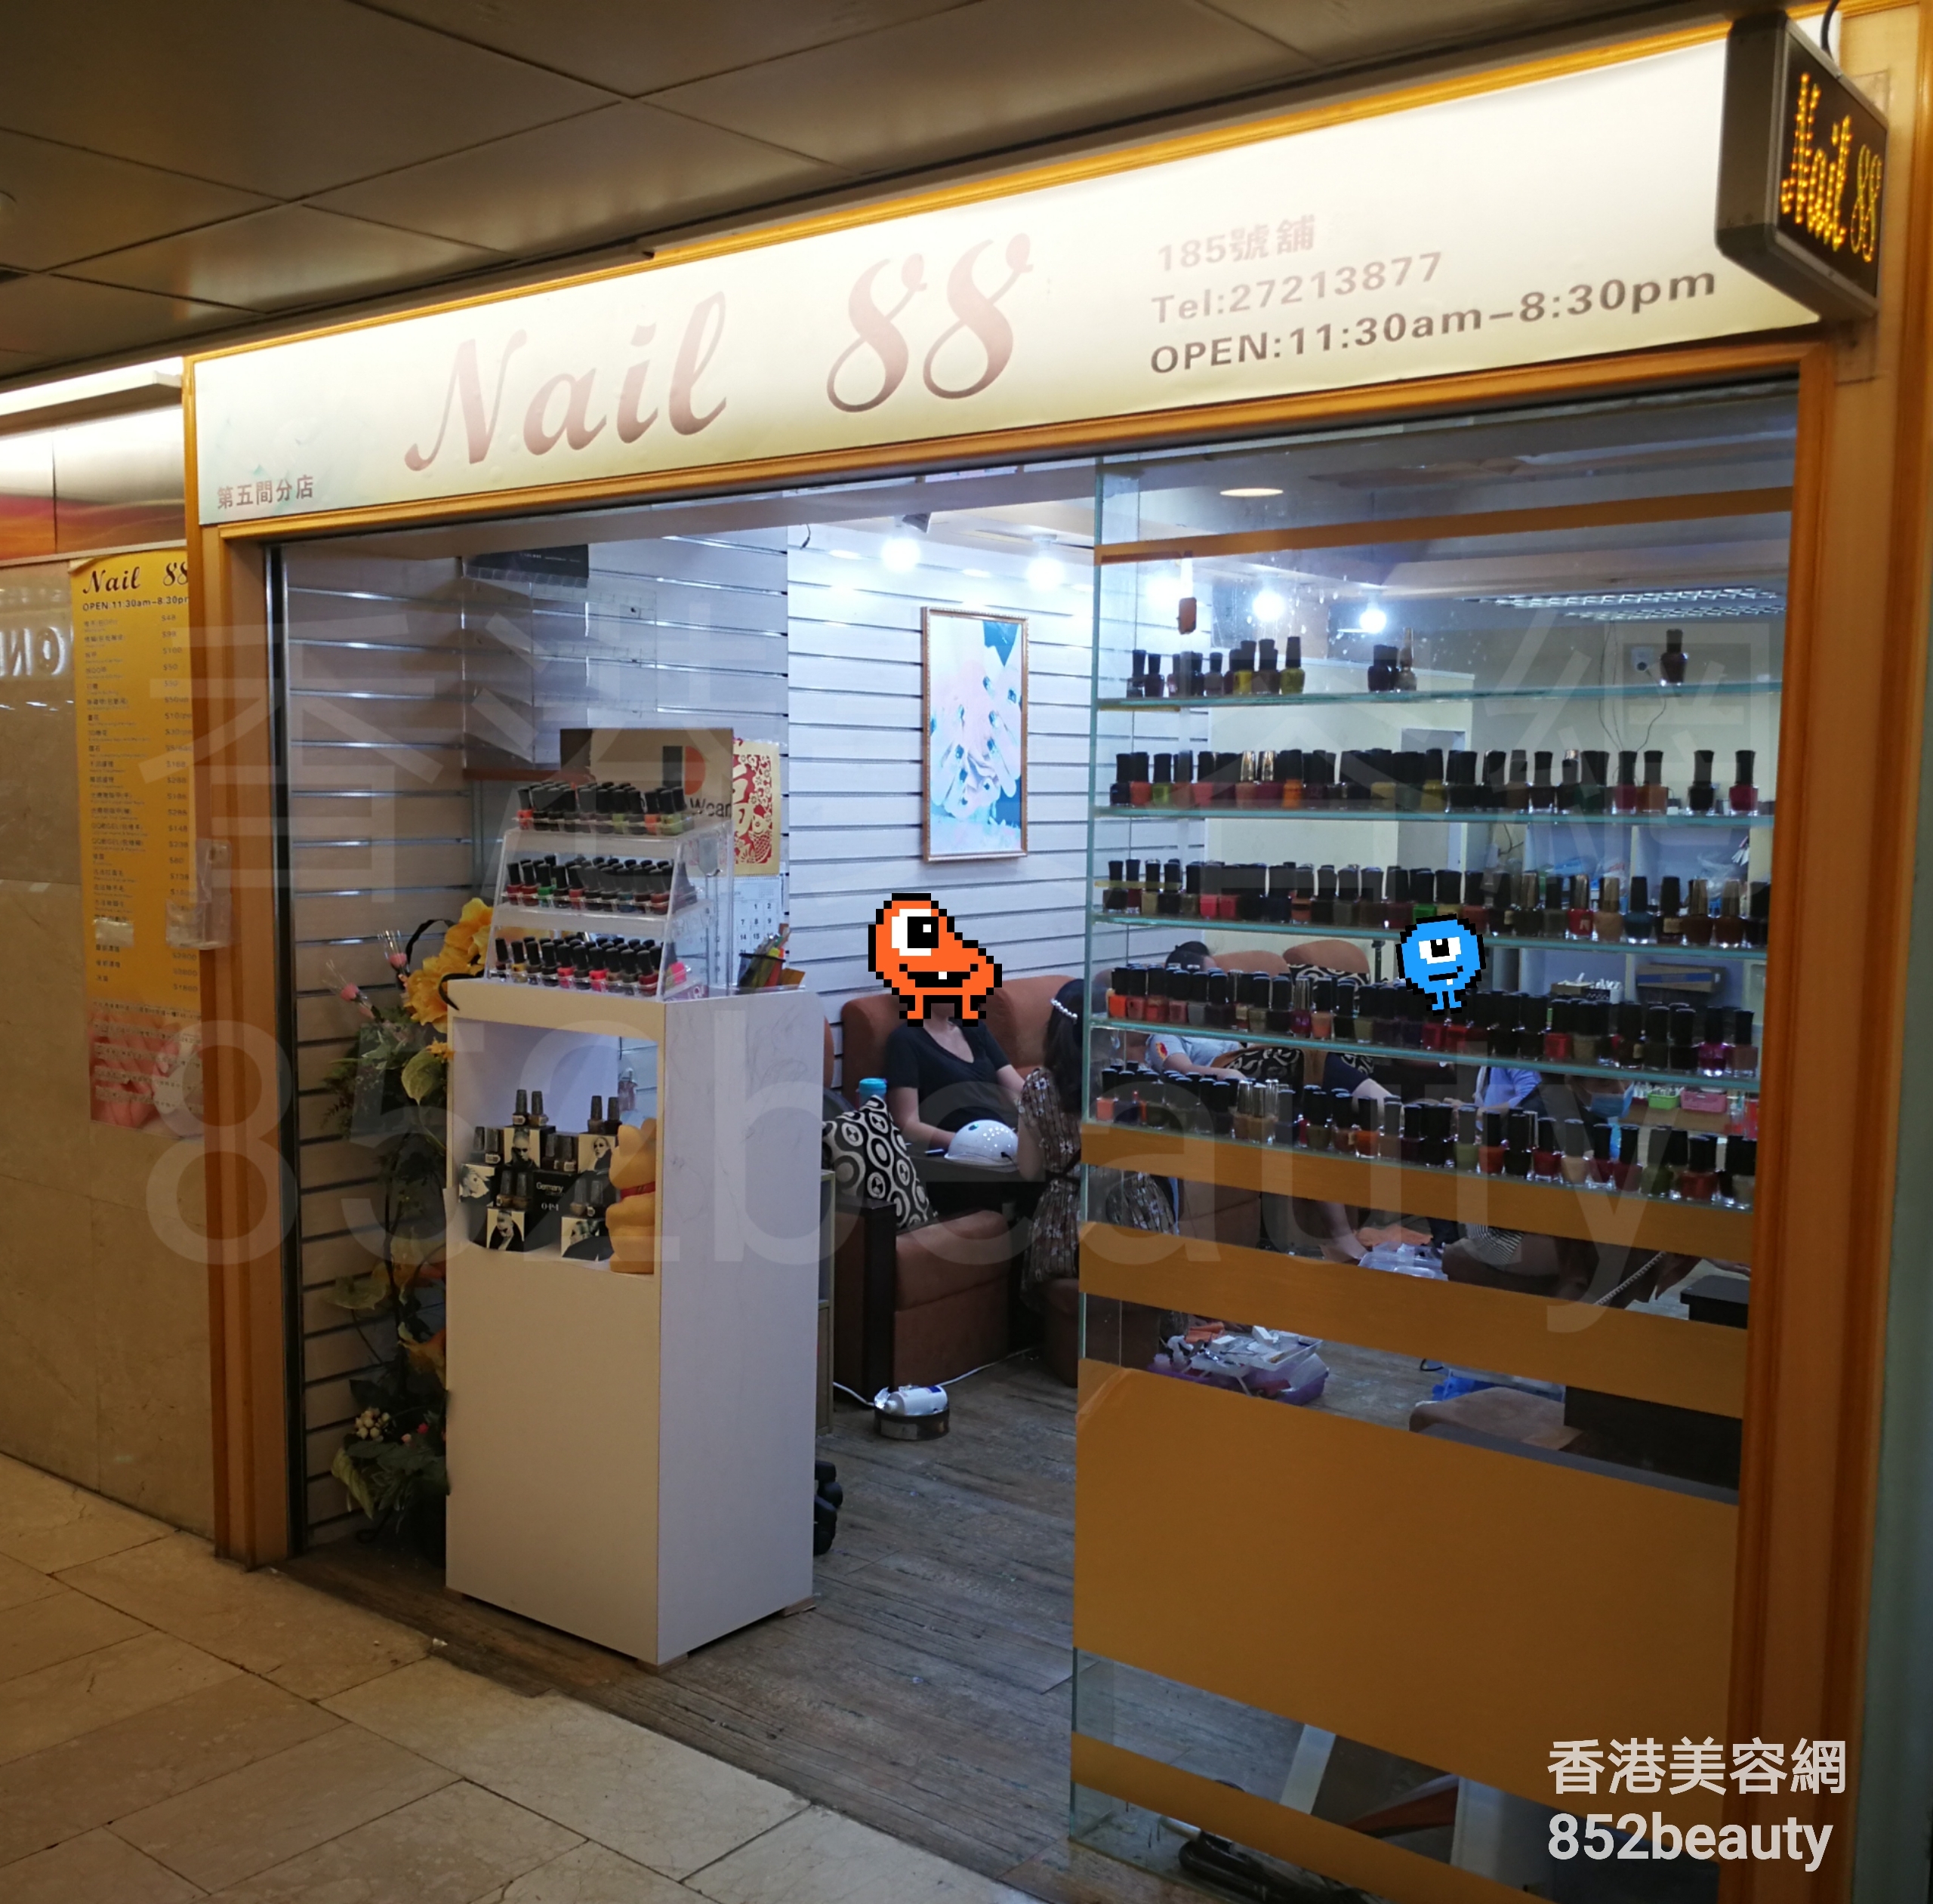 香港美容網 Hong Kong Beauty Salon 美容院 / 美容師: Nail 88 (尖沙咀店)